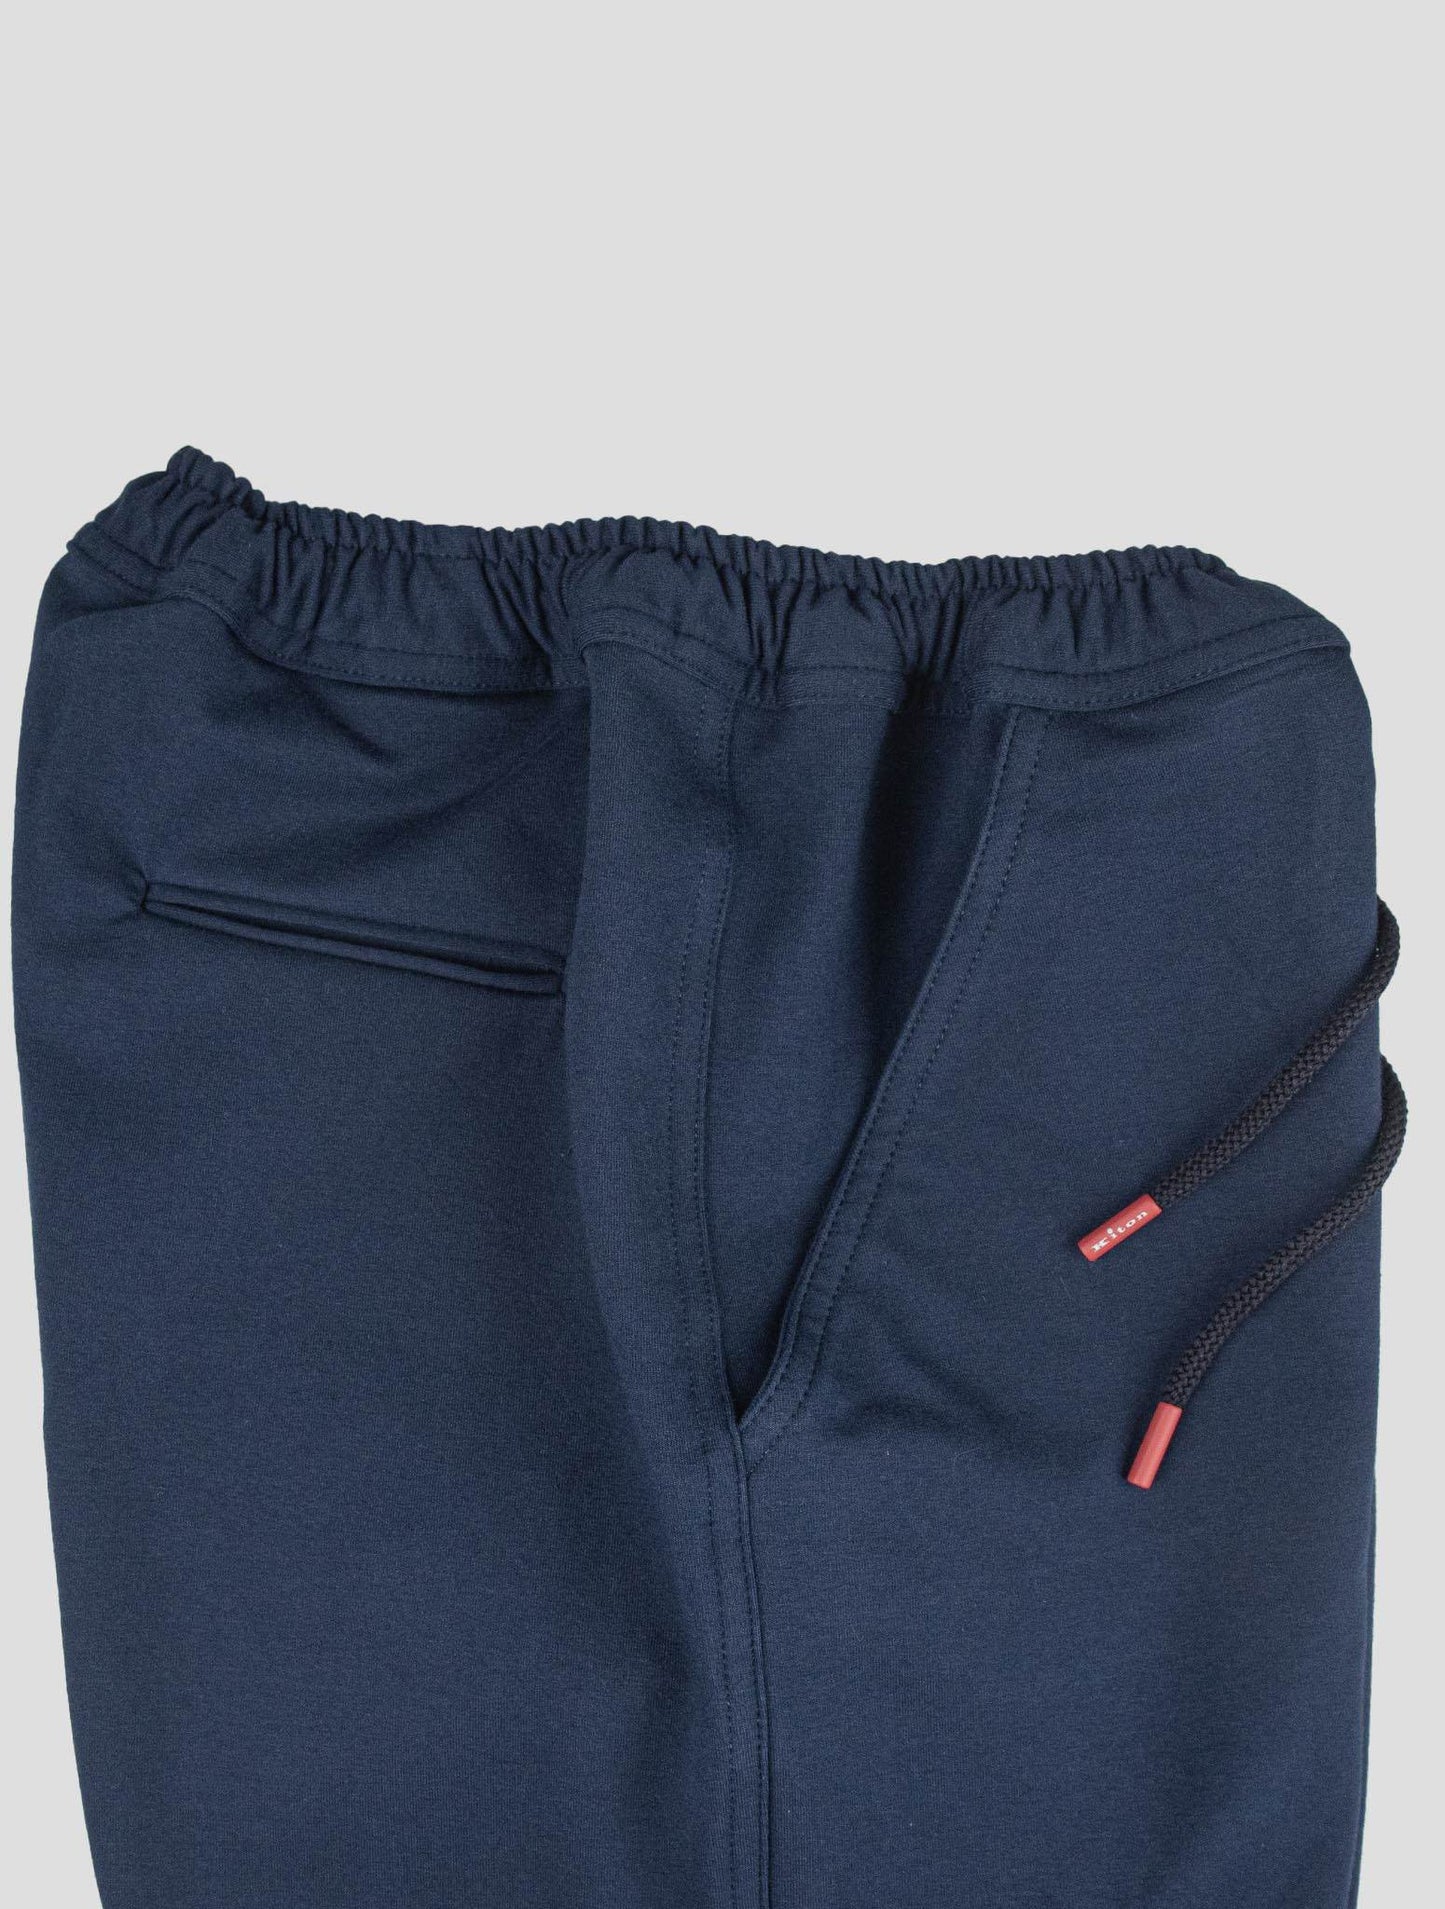 Pantalón corto Kiton Ea de algodón azul oscuro